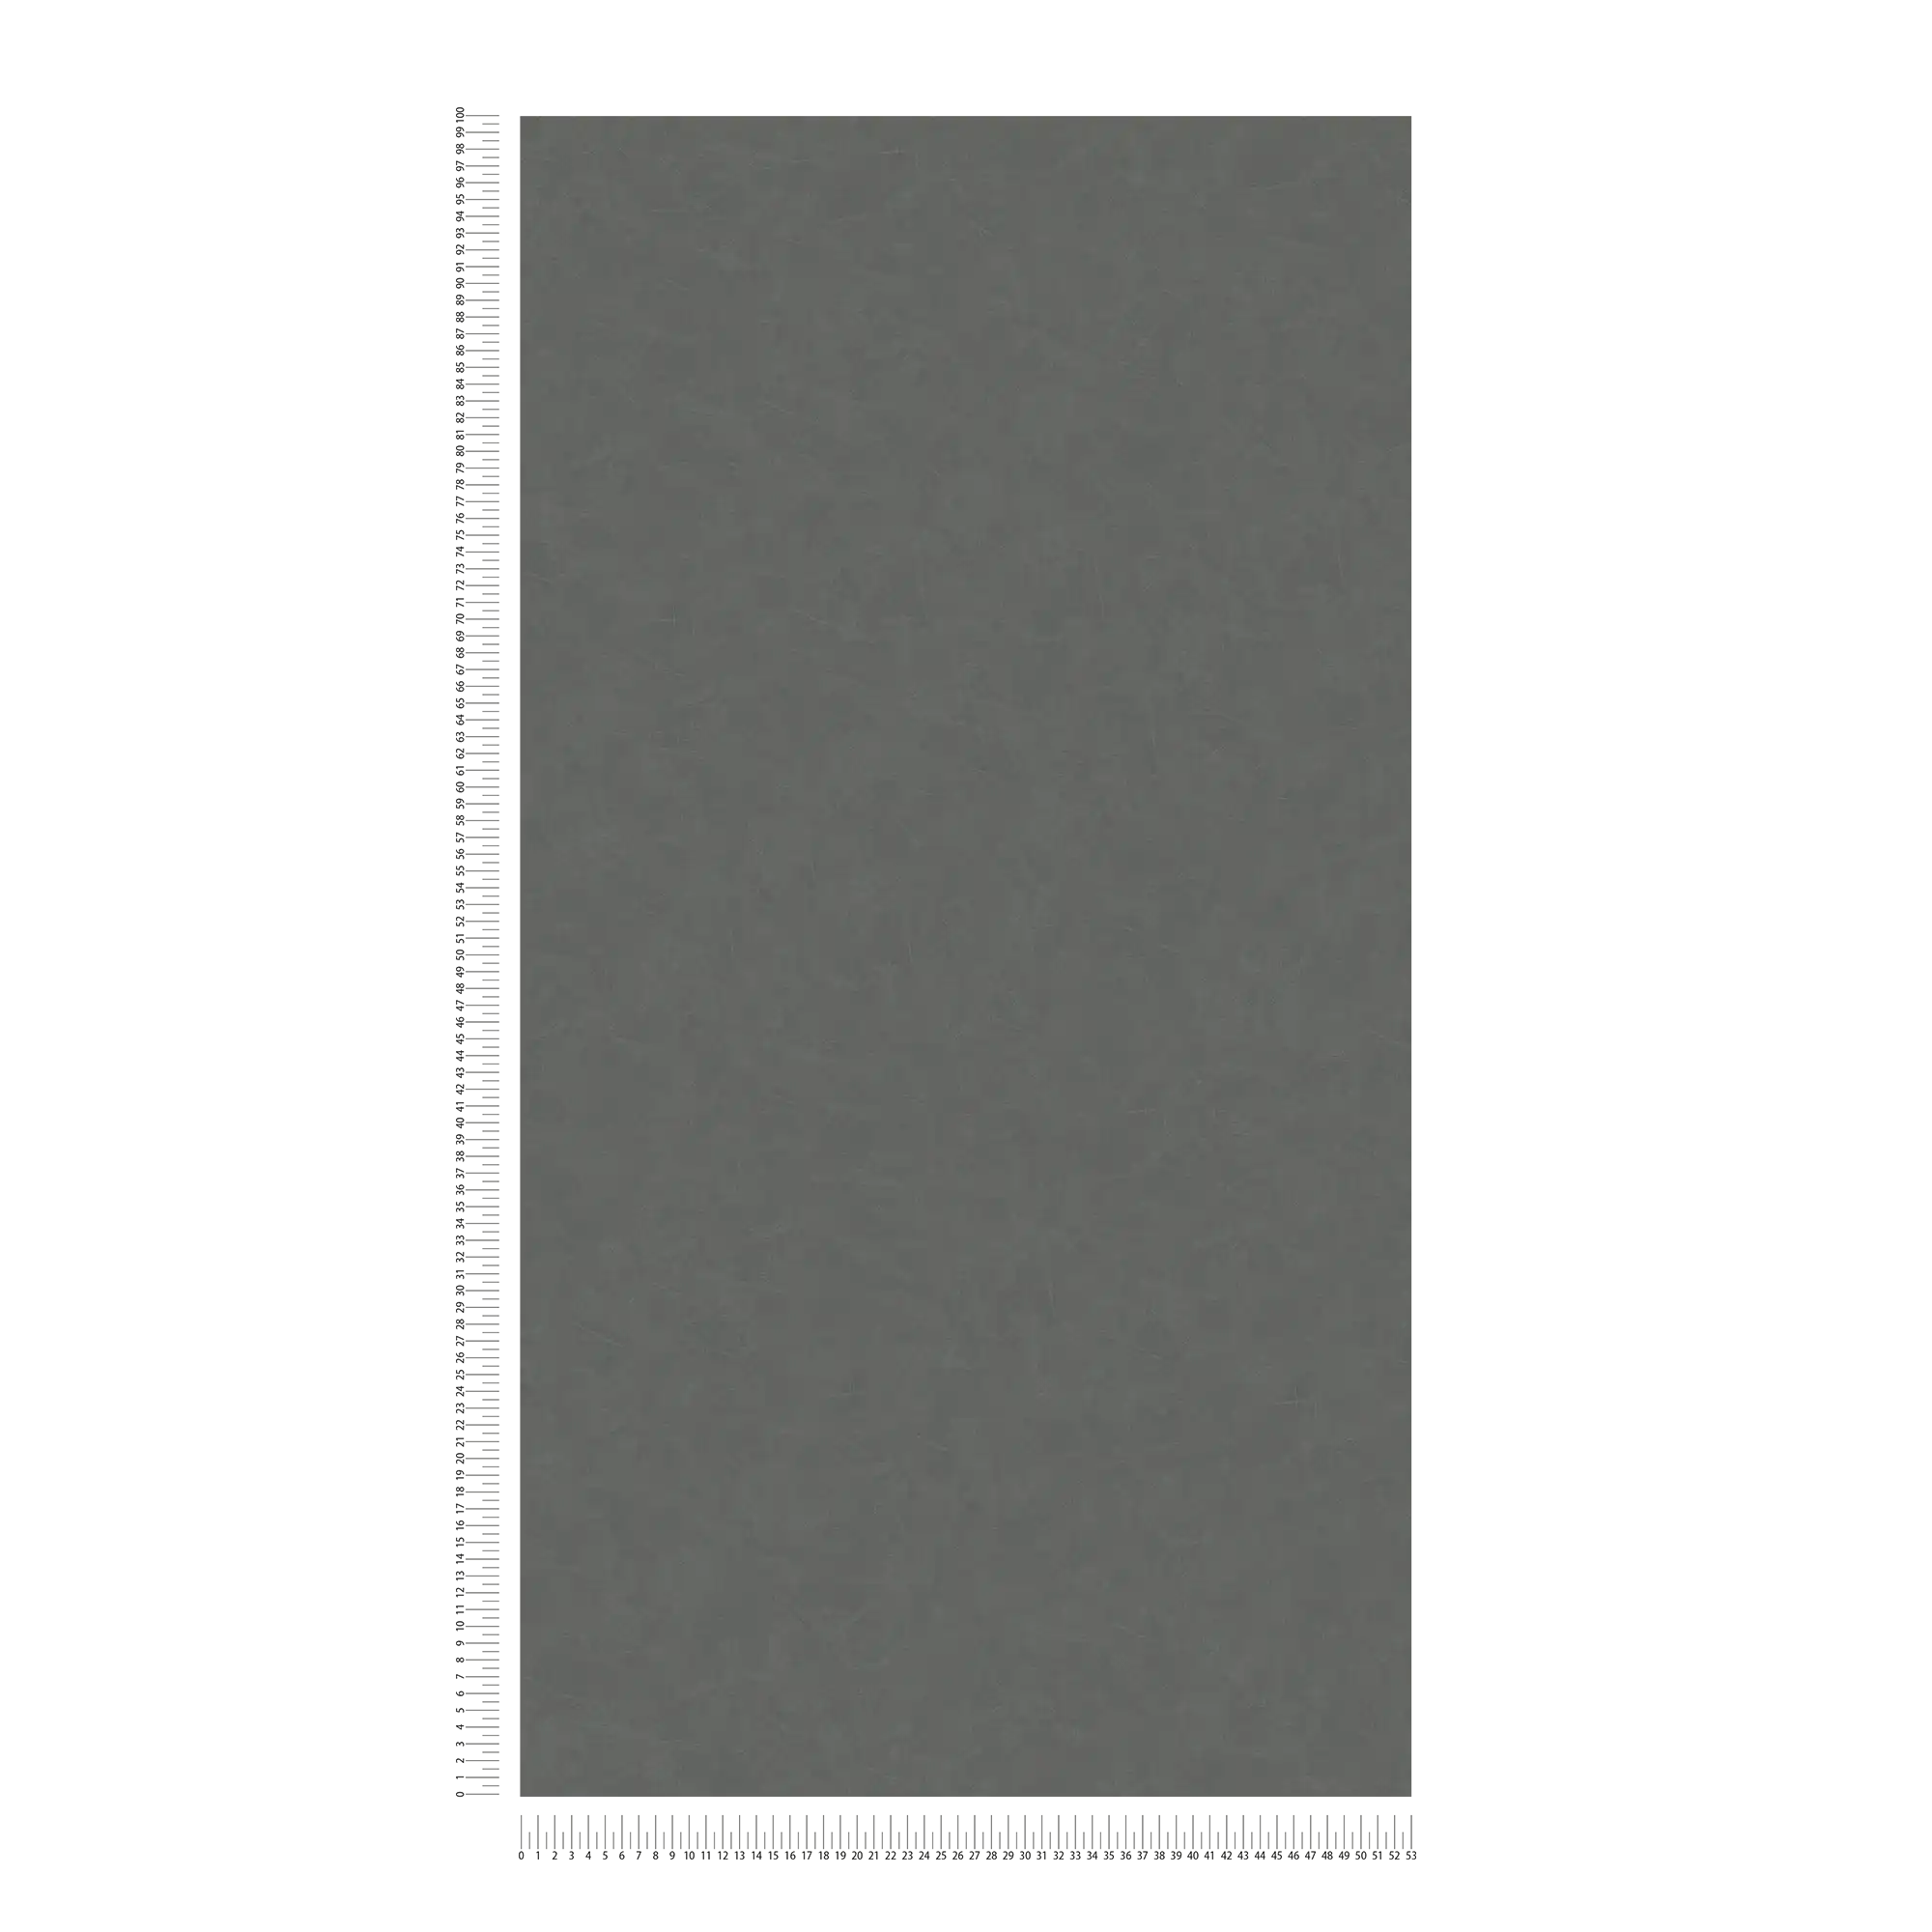             Unit behang gipslook, kleurstructuur - grijs, antraciet
        